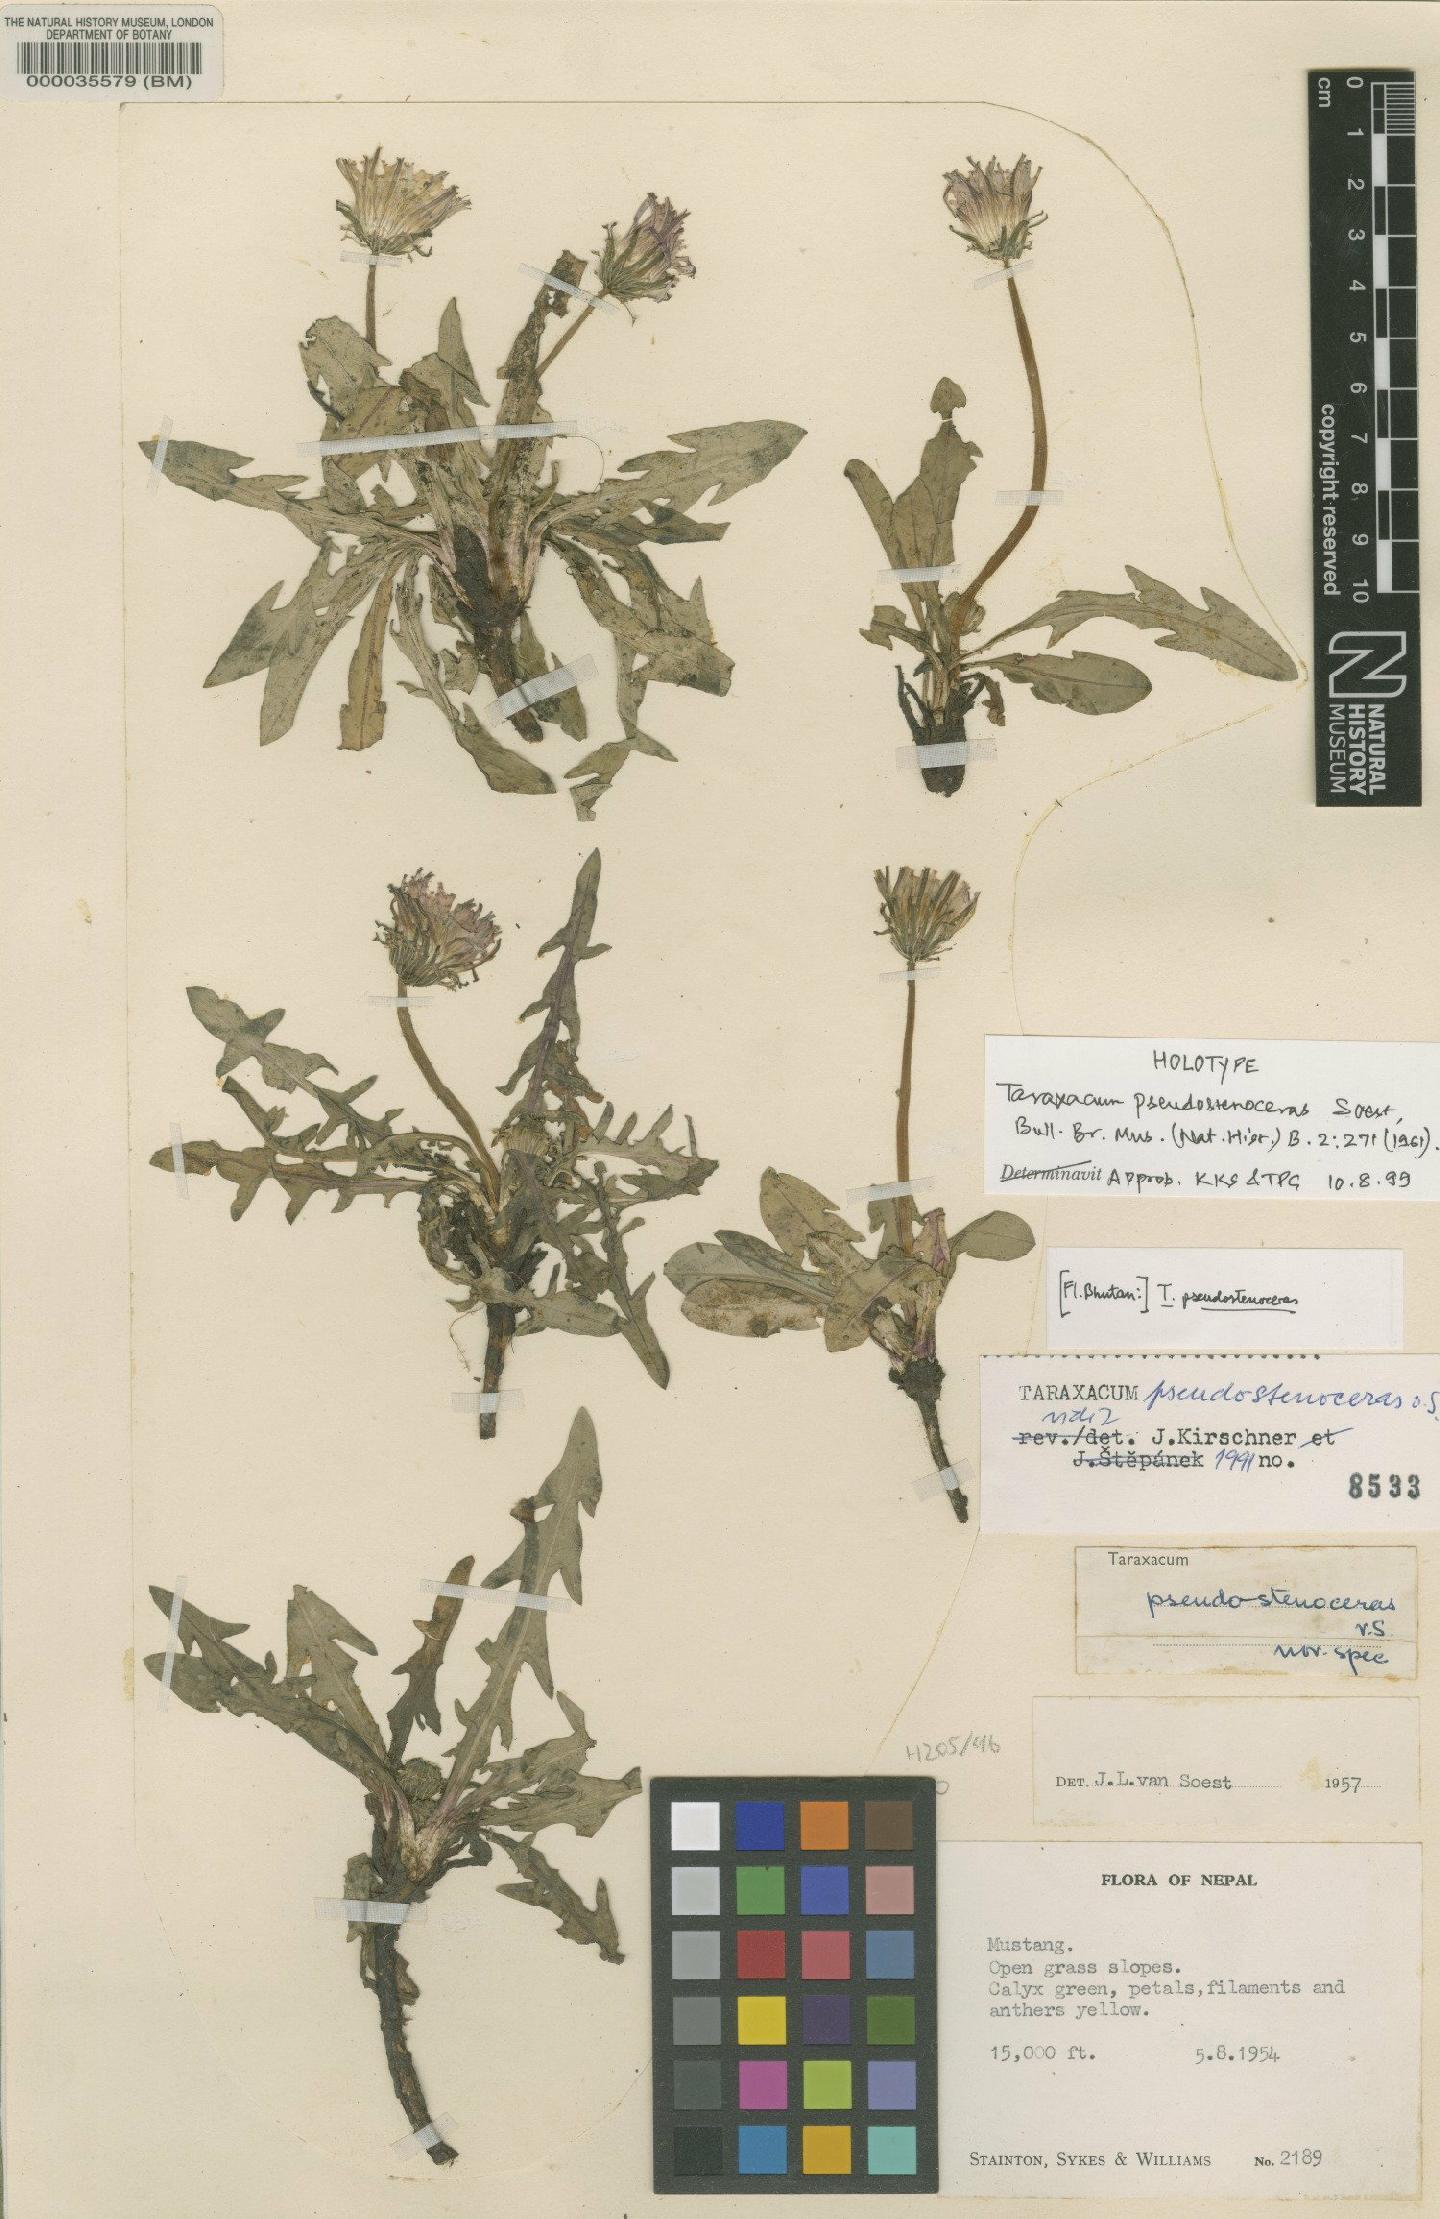 To NHMUK collection (Taraxacum pseudostevenii Soest; Holotype; NHMUK:ecatalogue:481651)